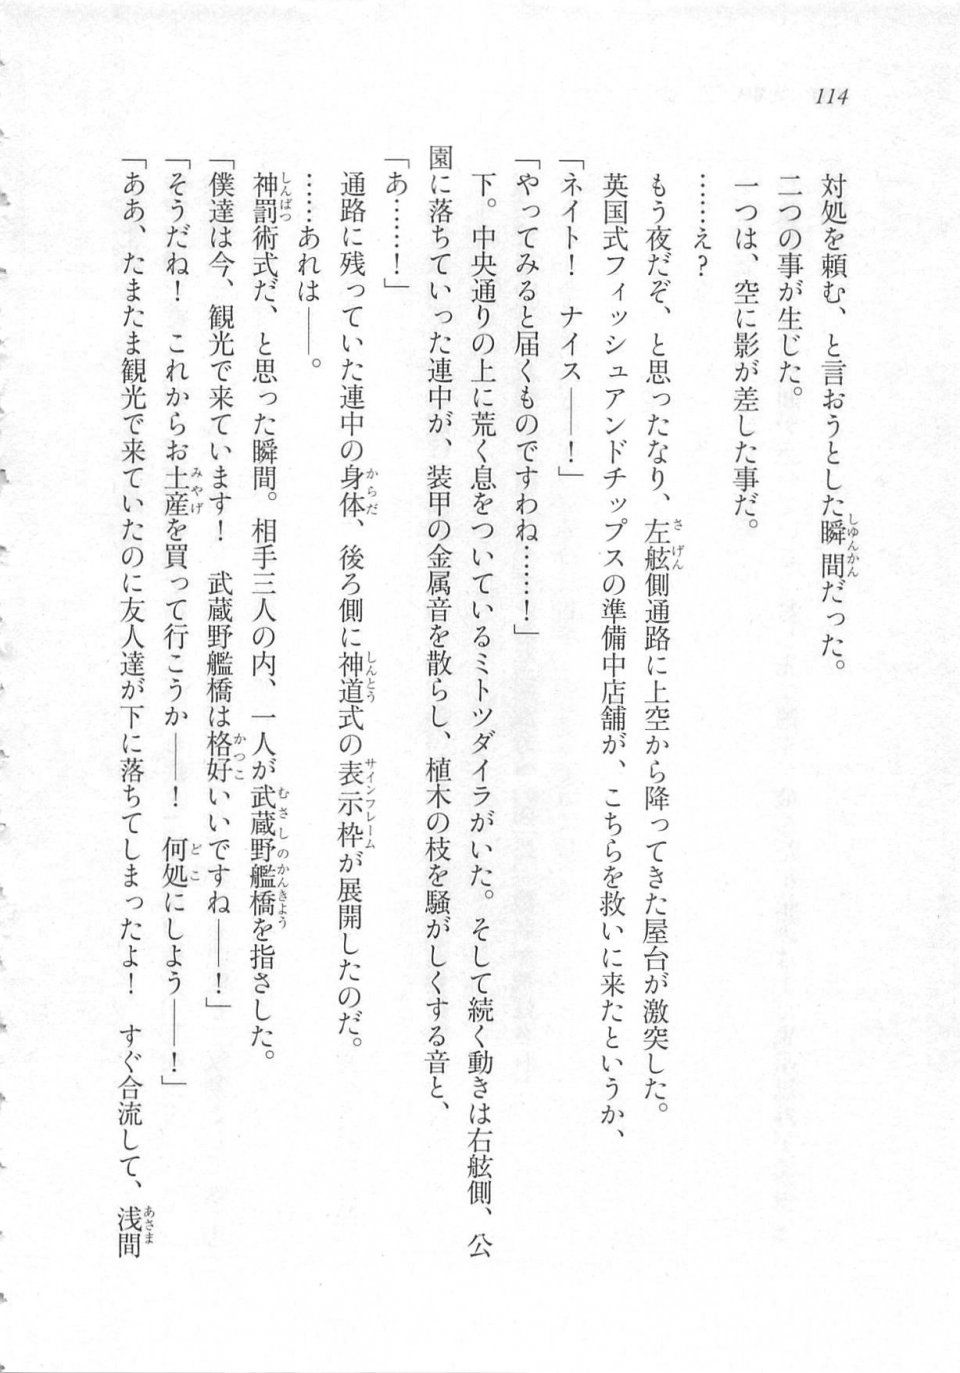 Kyoukai Senjou no Horizon LN Sidestory Vol 3 - Photo #118